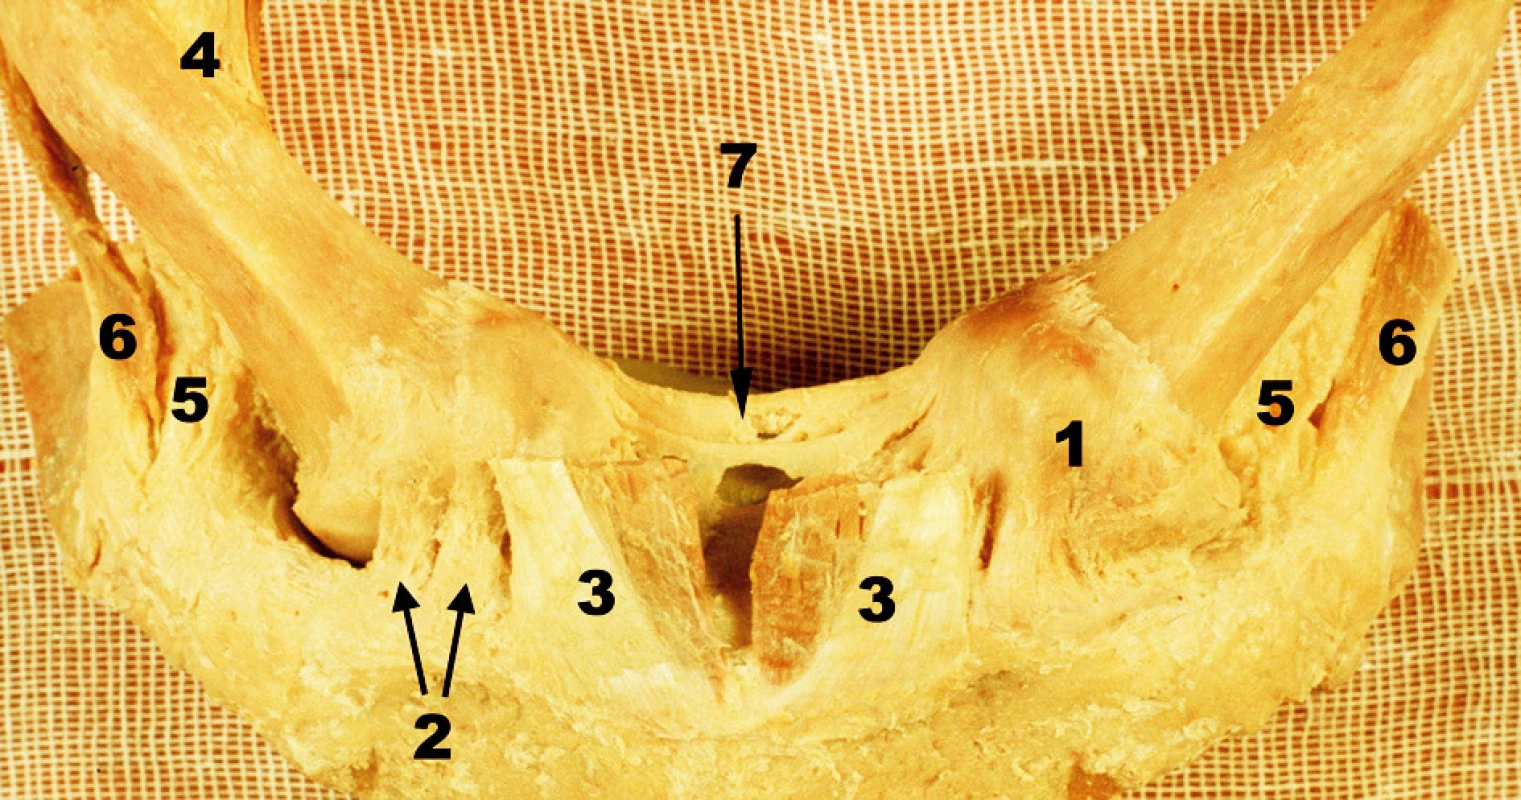 Oba sternoklavikulární klouby s přilehlou částí manubrium sterni – přední pohled, vpravo kloubní pouzdro částečně odstraněno. 1 – přední plocha pouzdra SC kloubu, 2. lig. sternoclaviculare ant., 3 – sternální porce m. sternocleidomastoiudeus, 4 – klavikulární porce m. sternocleidomastoideus, 5 – lig. costoclaviculare, 6 – šlacha m. subclavius, 7 – lig. interclaviculare Fig. 1. Both sternoclavicular joints with the adjacent part of the manubrium sterni – anterior view, the joint capsule was partially removed on the right side. 1 – anterior surface of the capsule of SC joint, 2 – anterior sternoclaviculare ligament, 3 – the sternal portion of sternocleidomastoid muscle, 4 – the clavicular portion of sternocleidomastoid muscle, 5 – costoclavicular ligament, 6 – tendon of subclavius muscle, 7 – interclavicular ligament